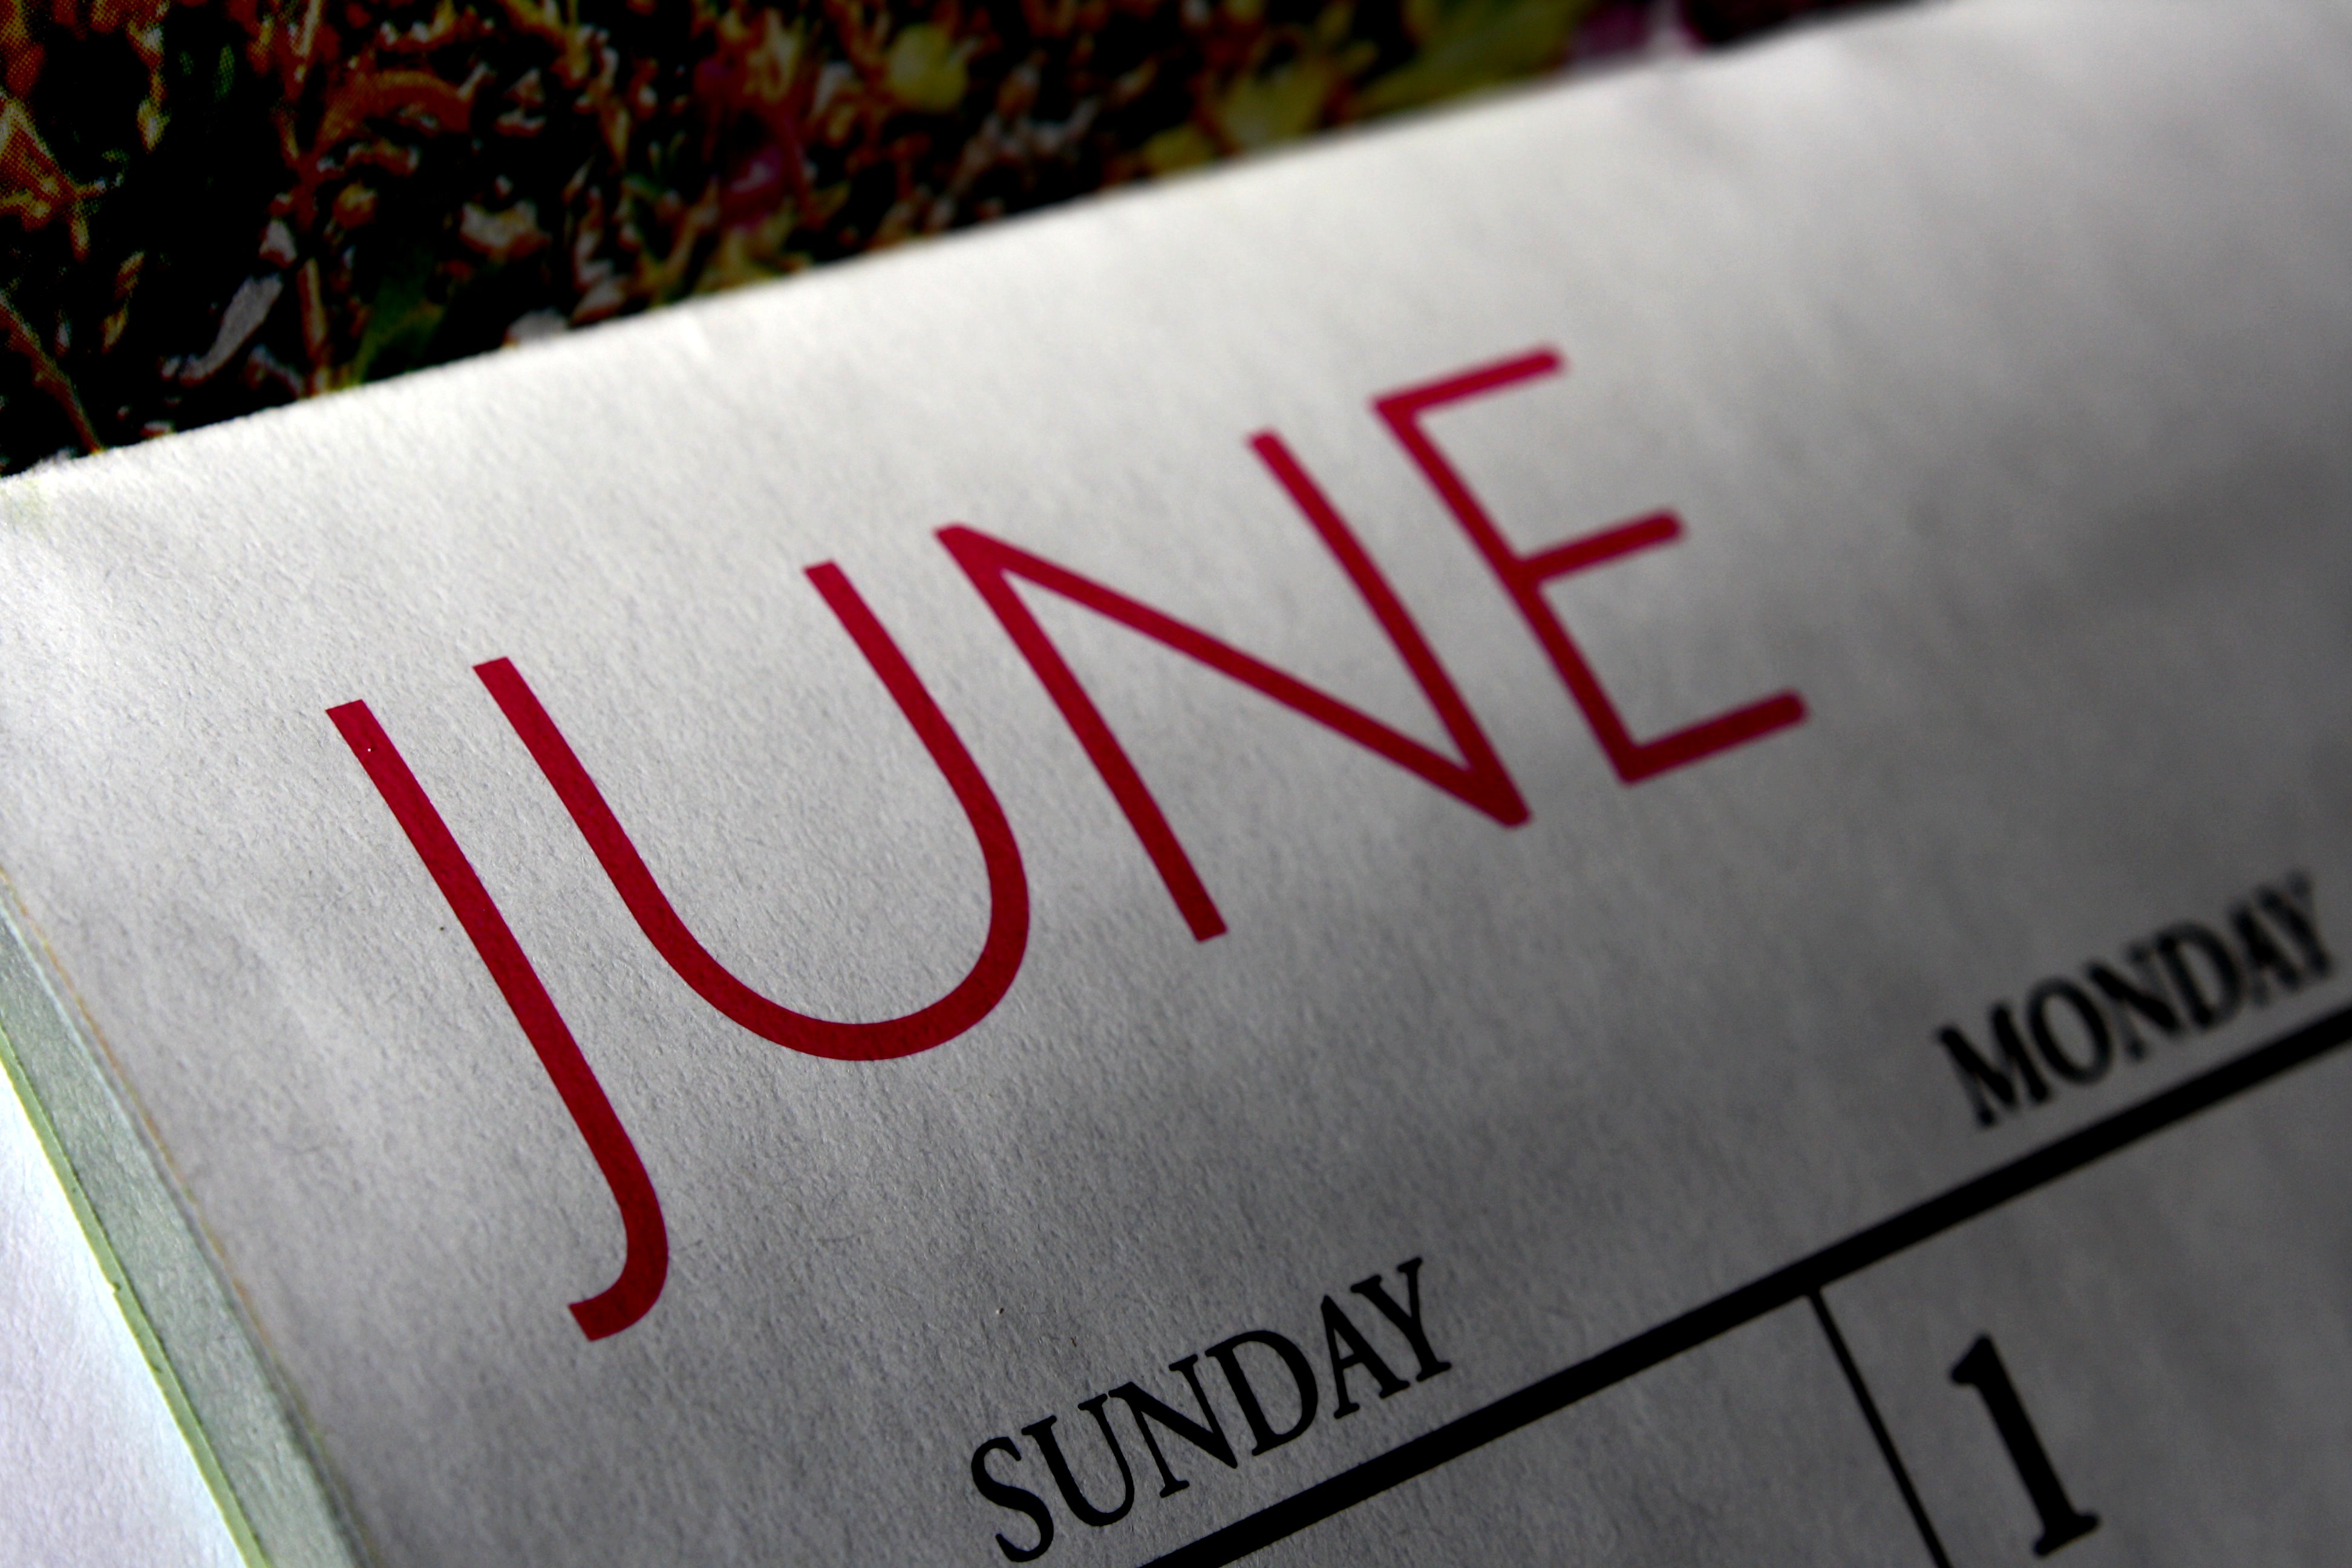 June Calendar Picture Free Photograph Photos Public Domain